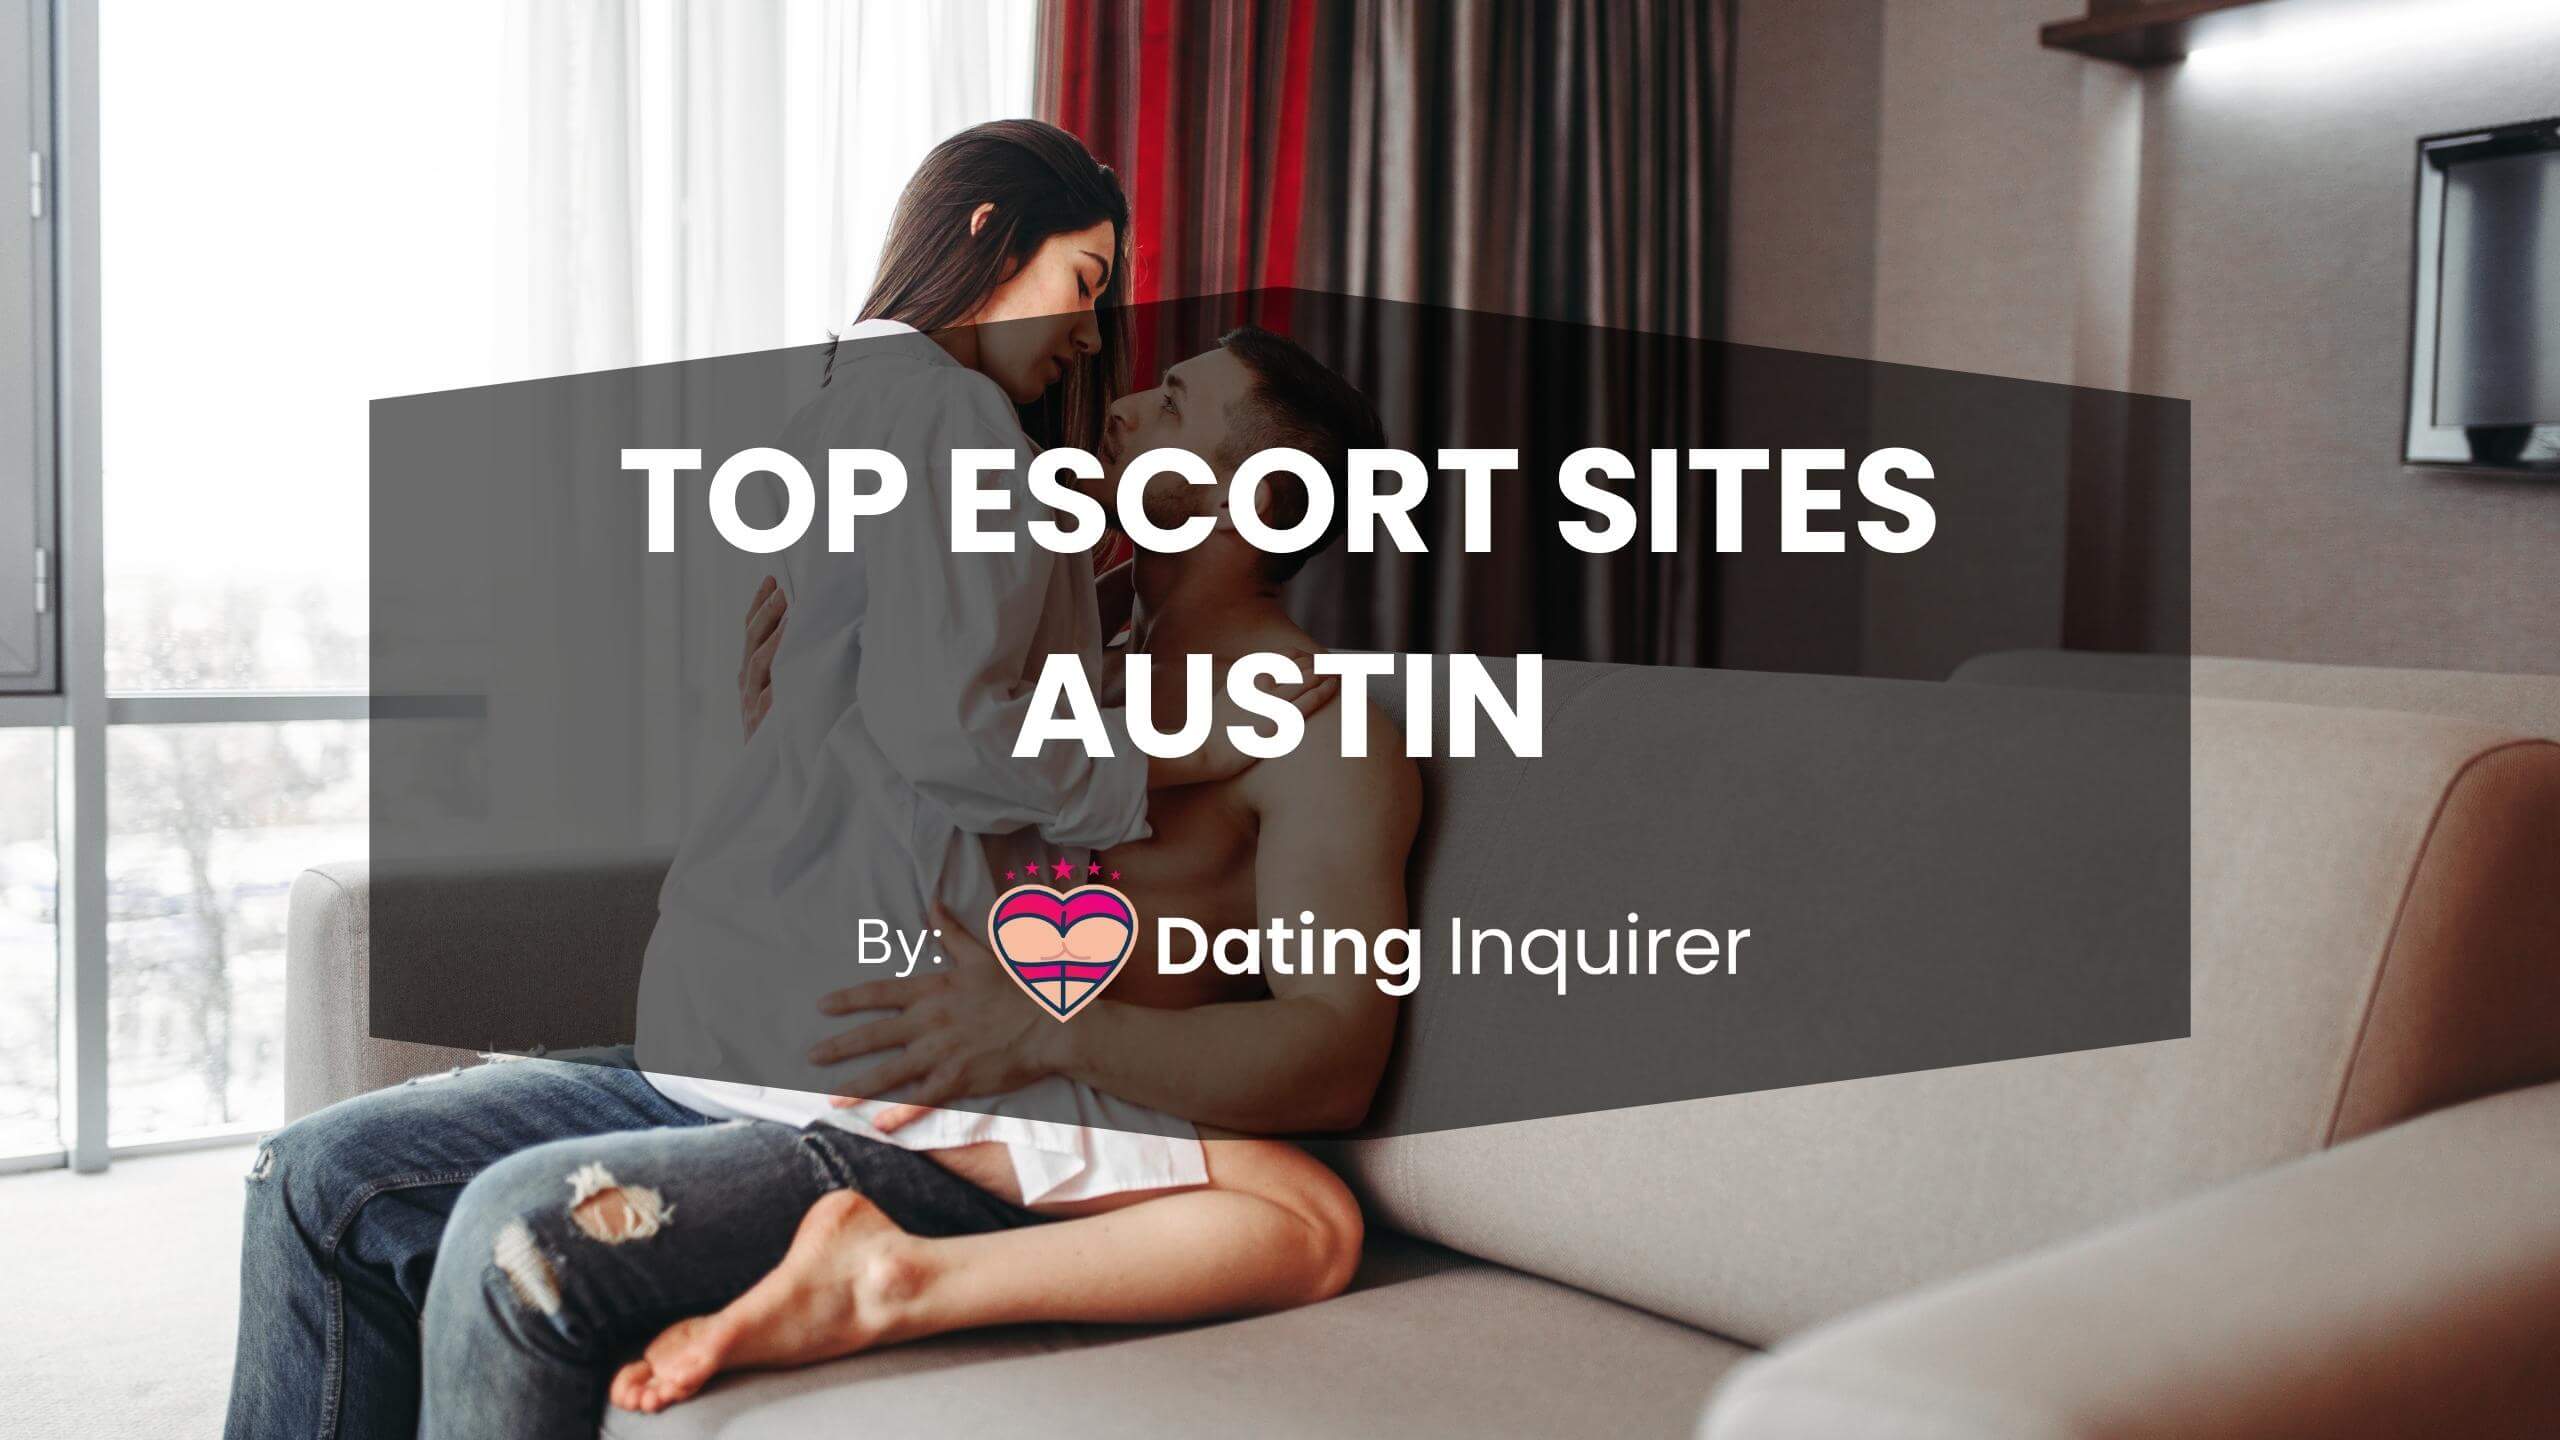 top escort sites austin cover